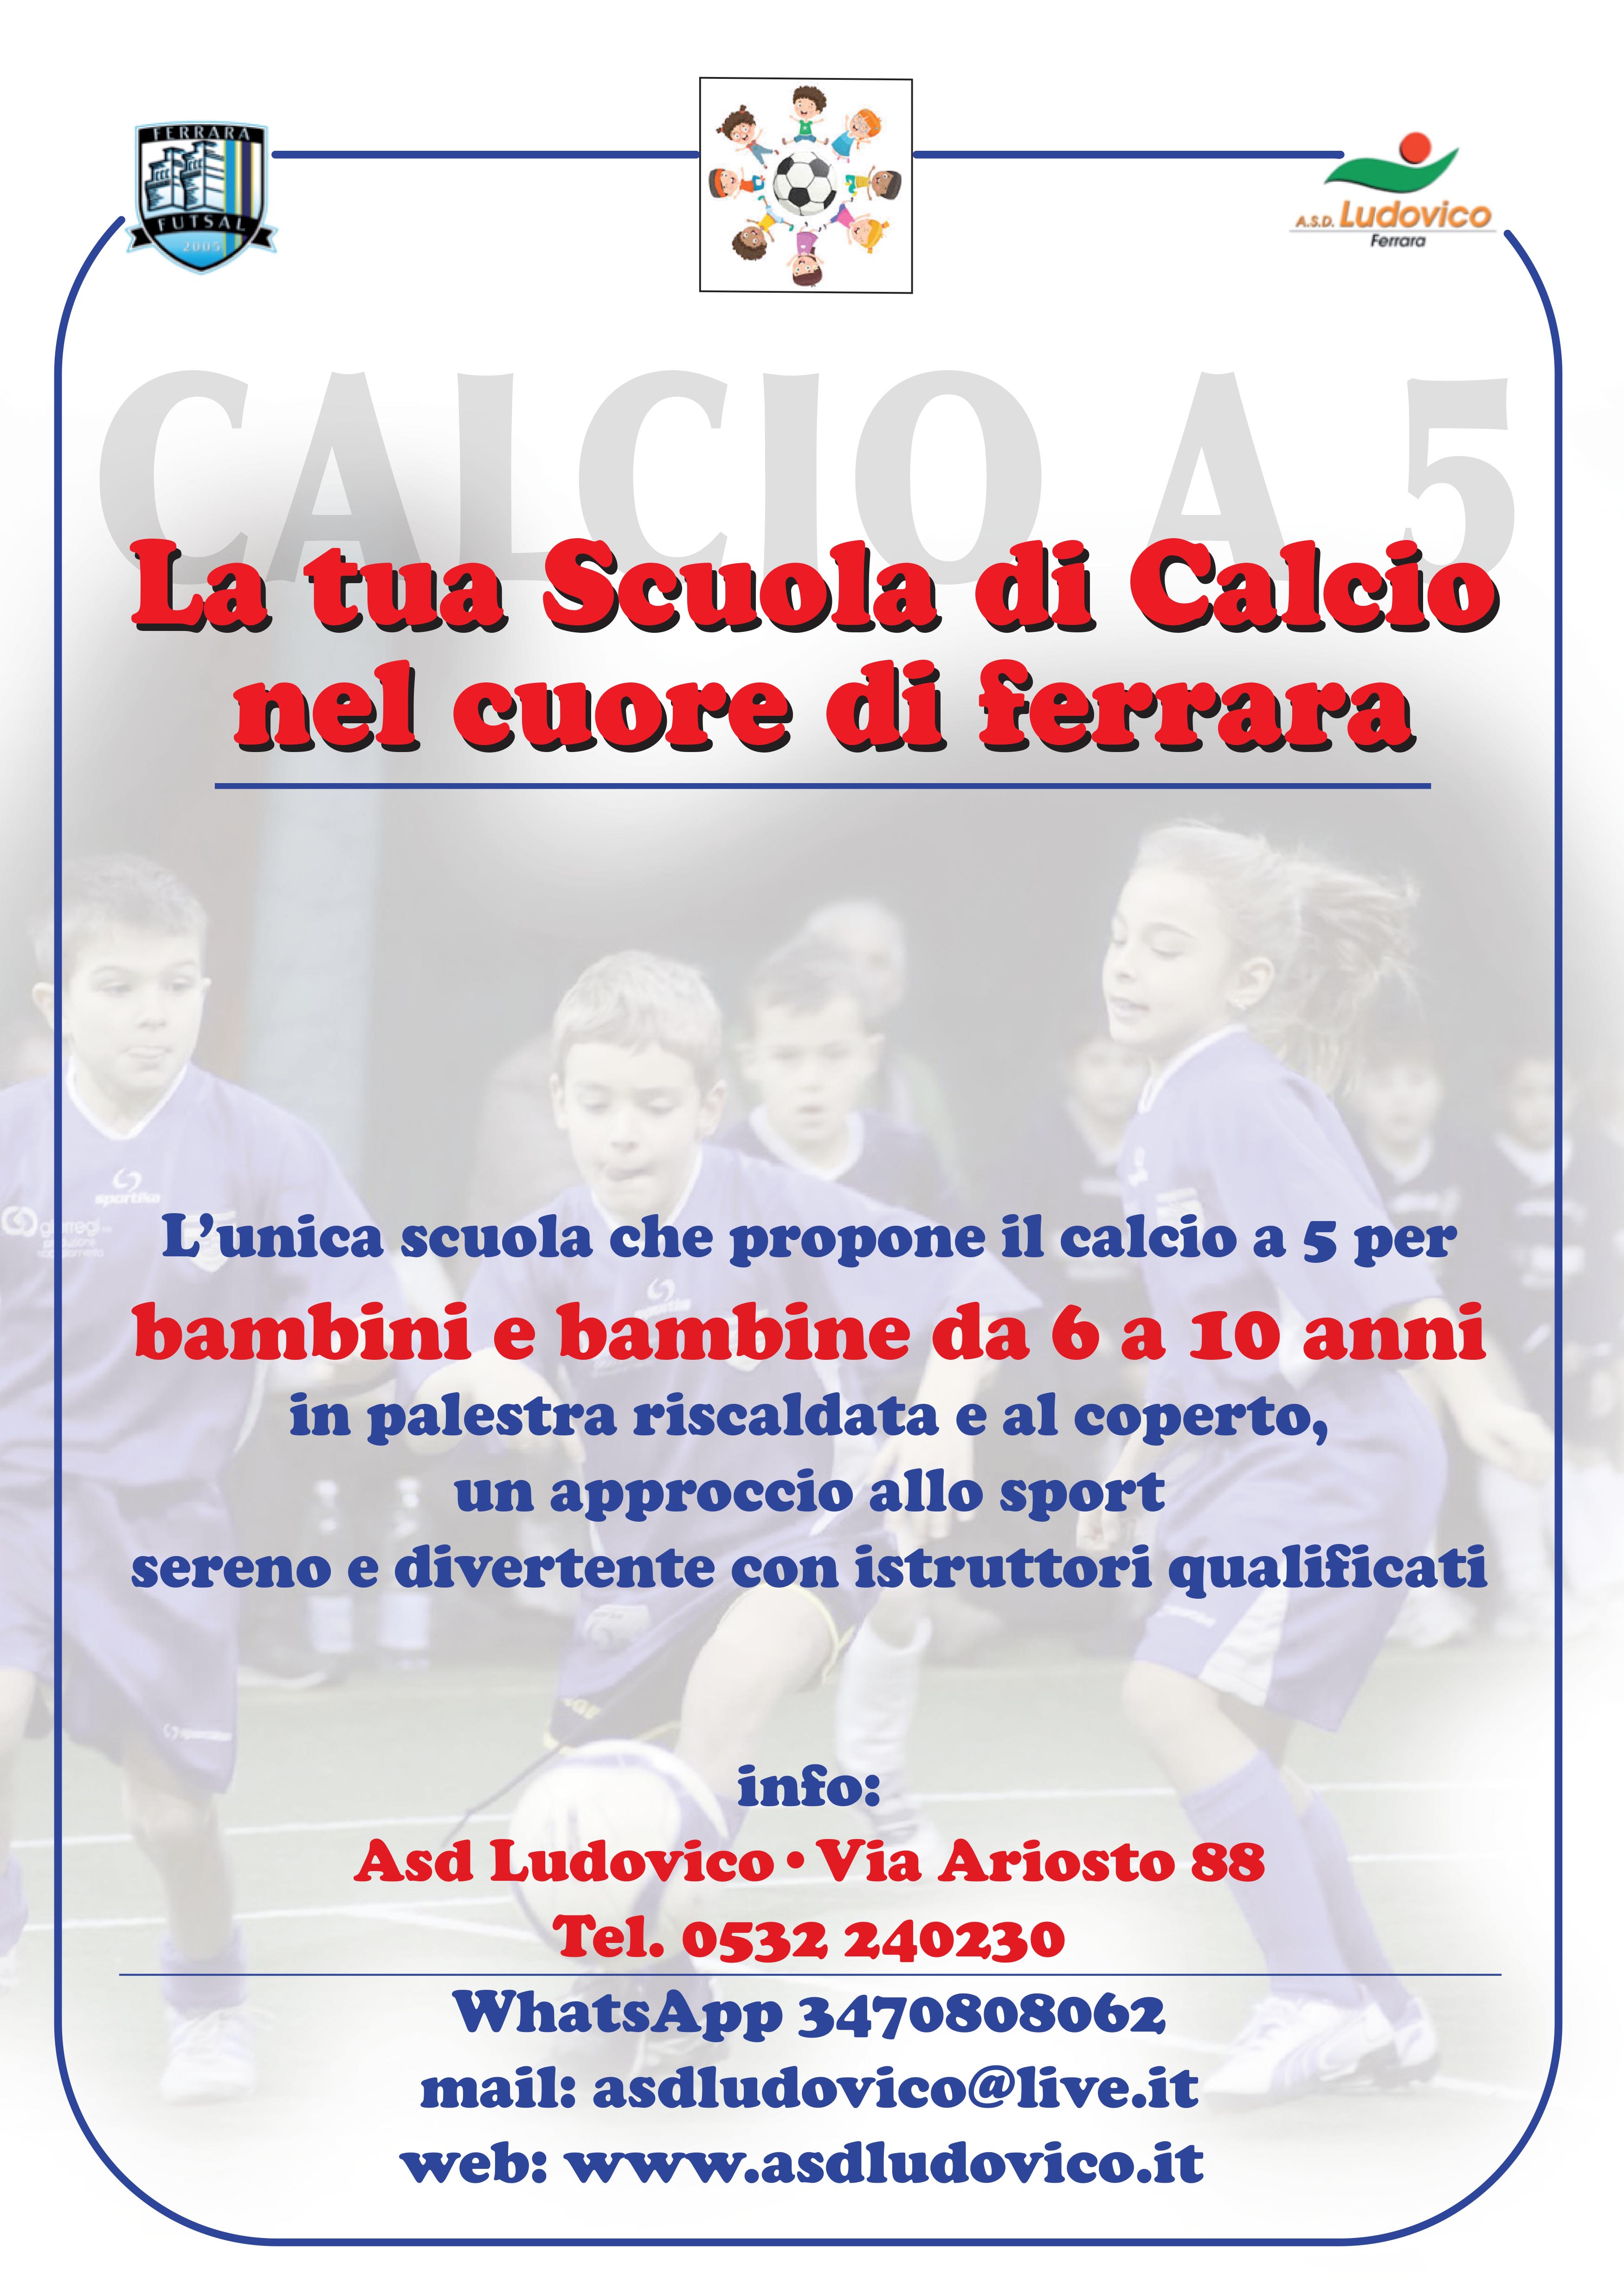 Scuola Calcio Ludovico Via Ariosto 88